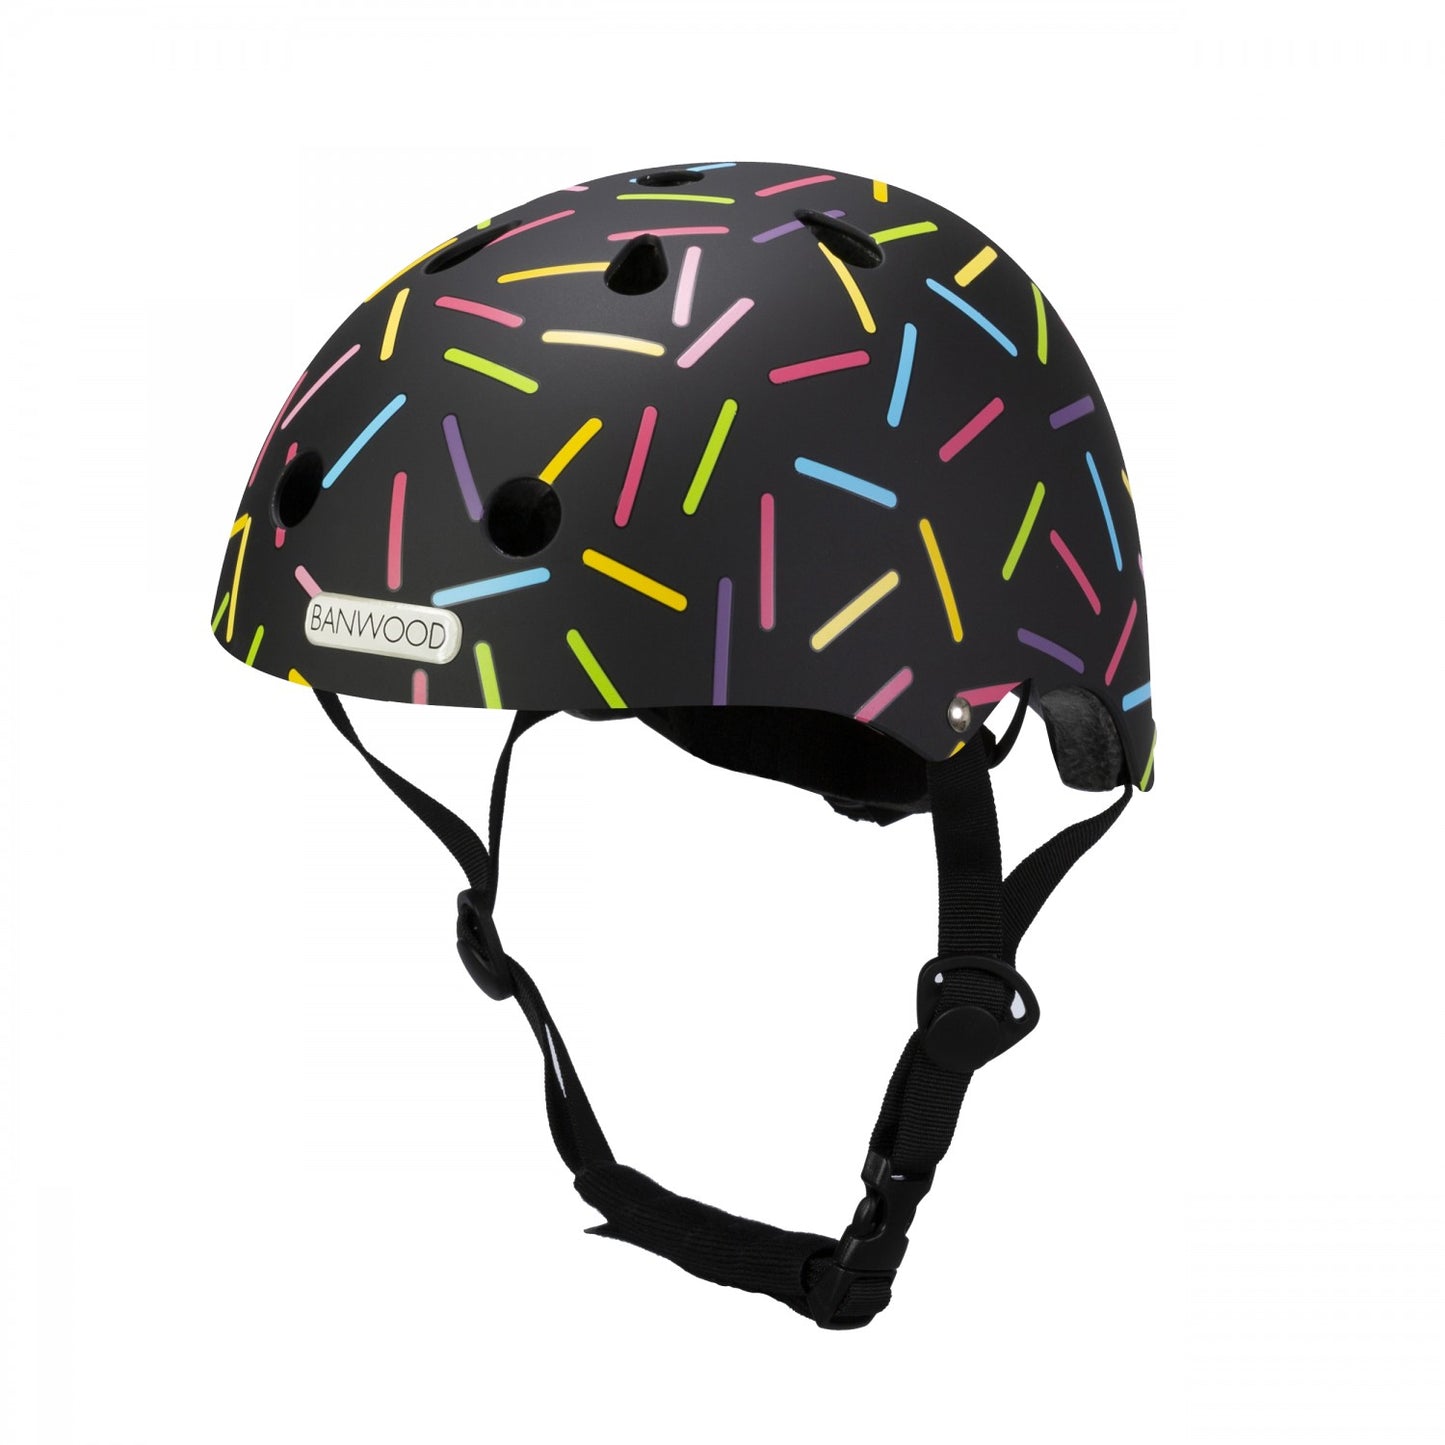 Helmet by Banwood